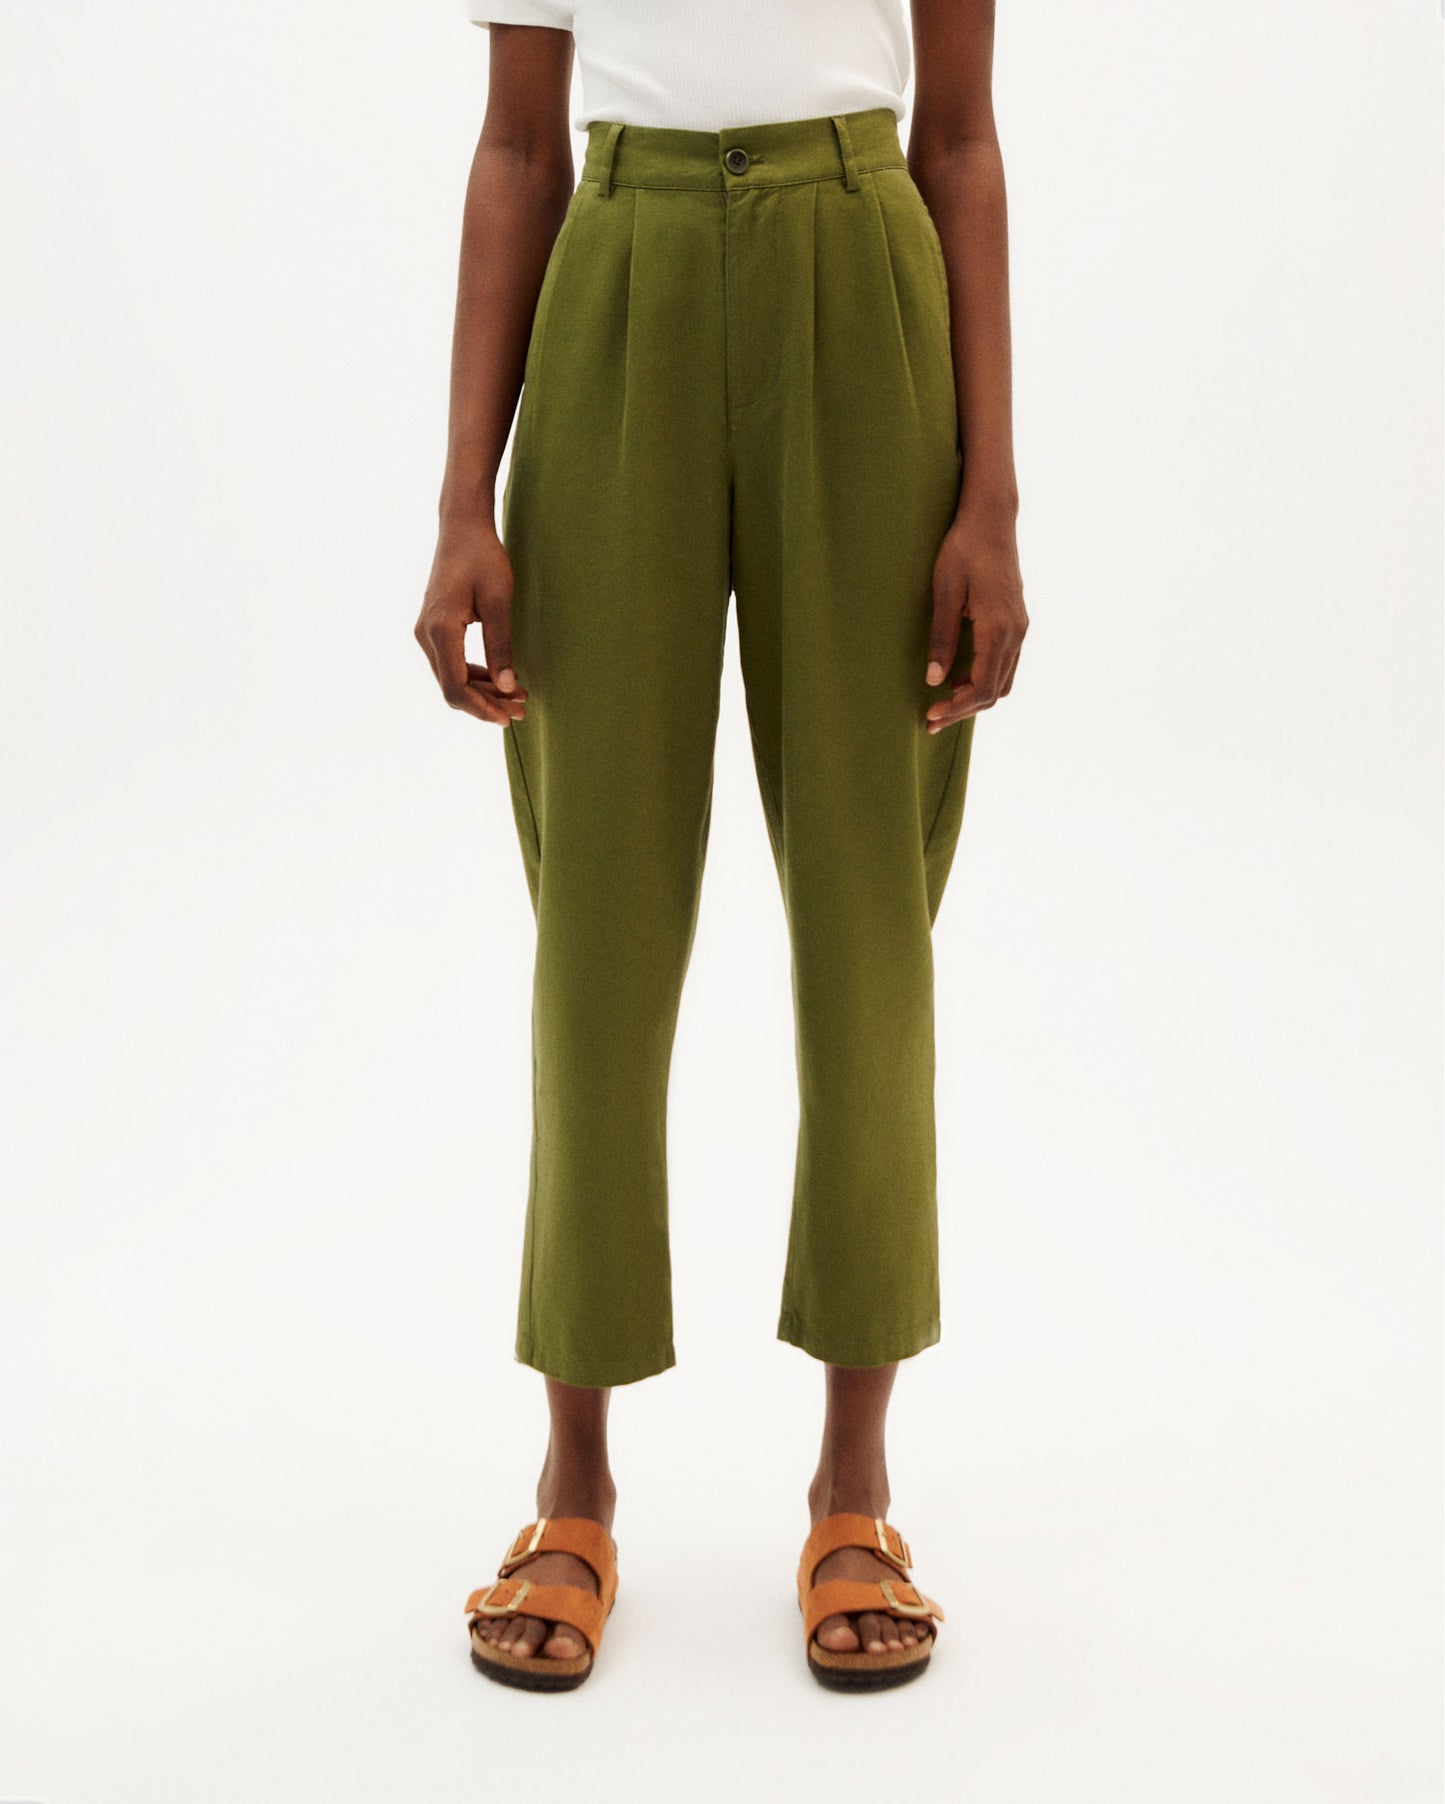 Rina Green pants - hemp and cotton - Thinking Mu